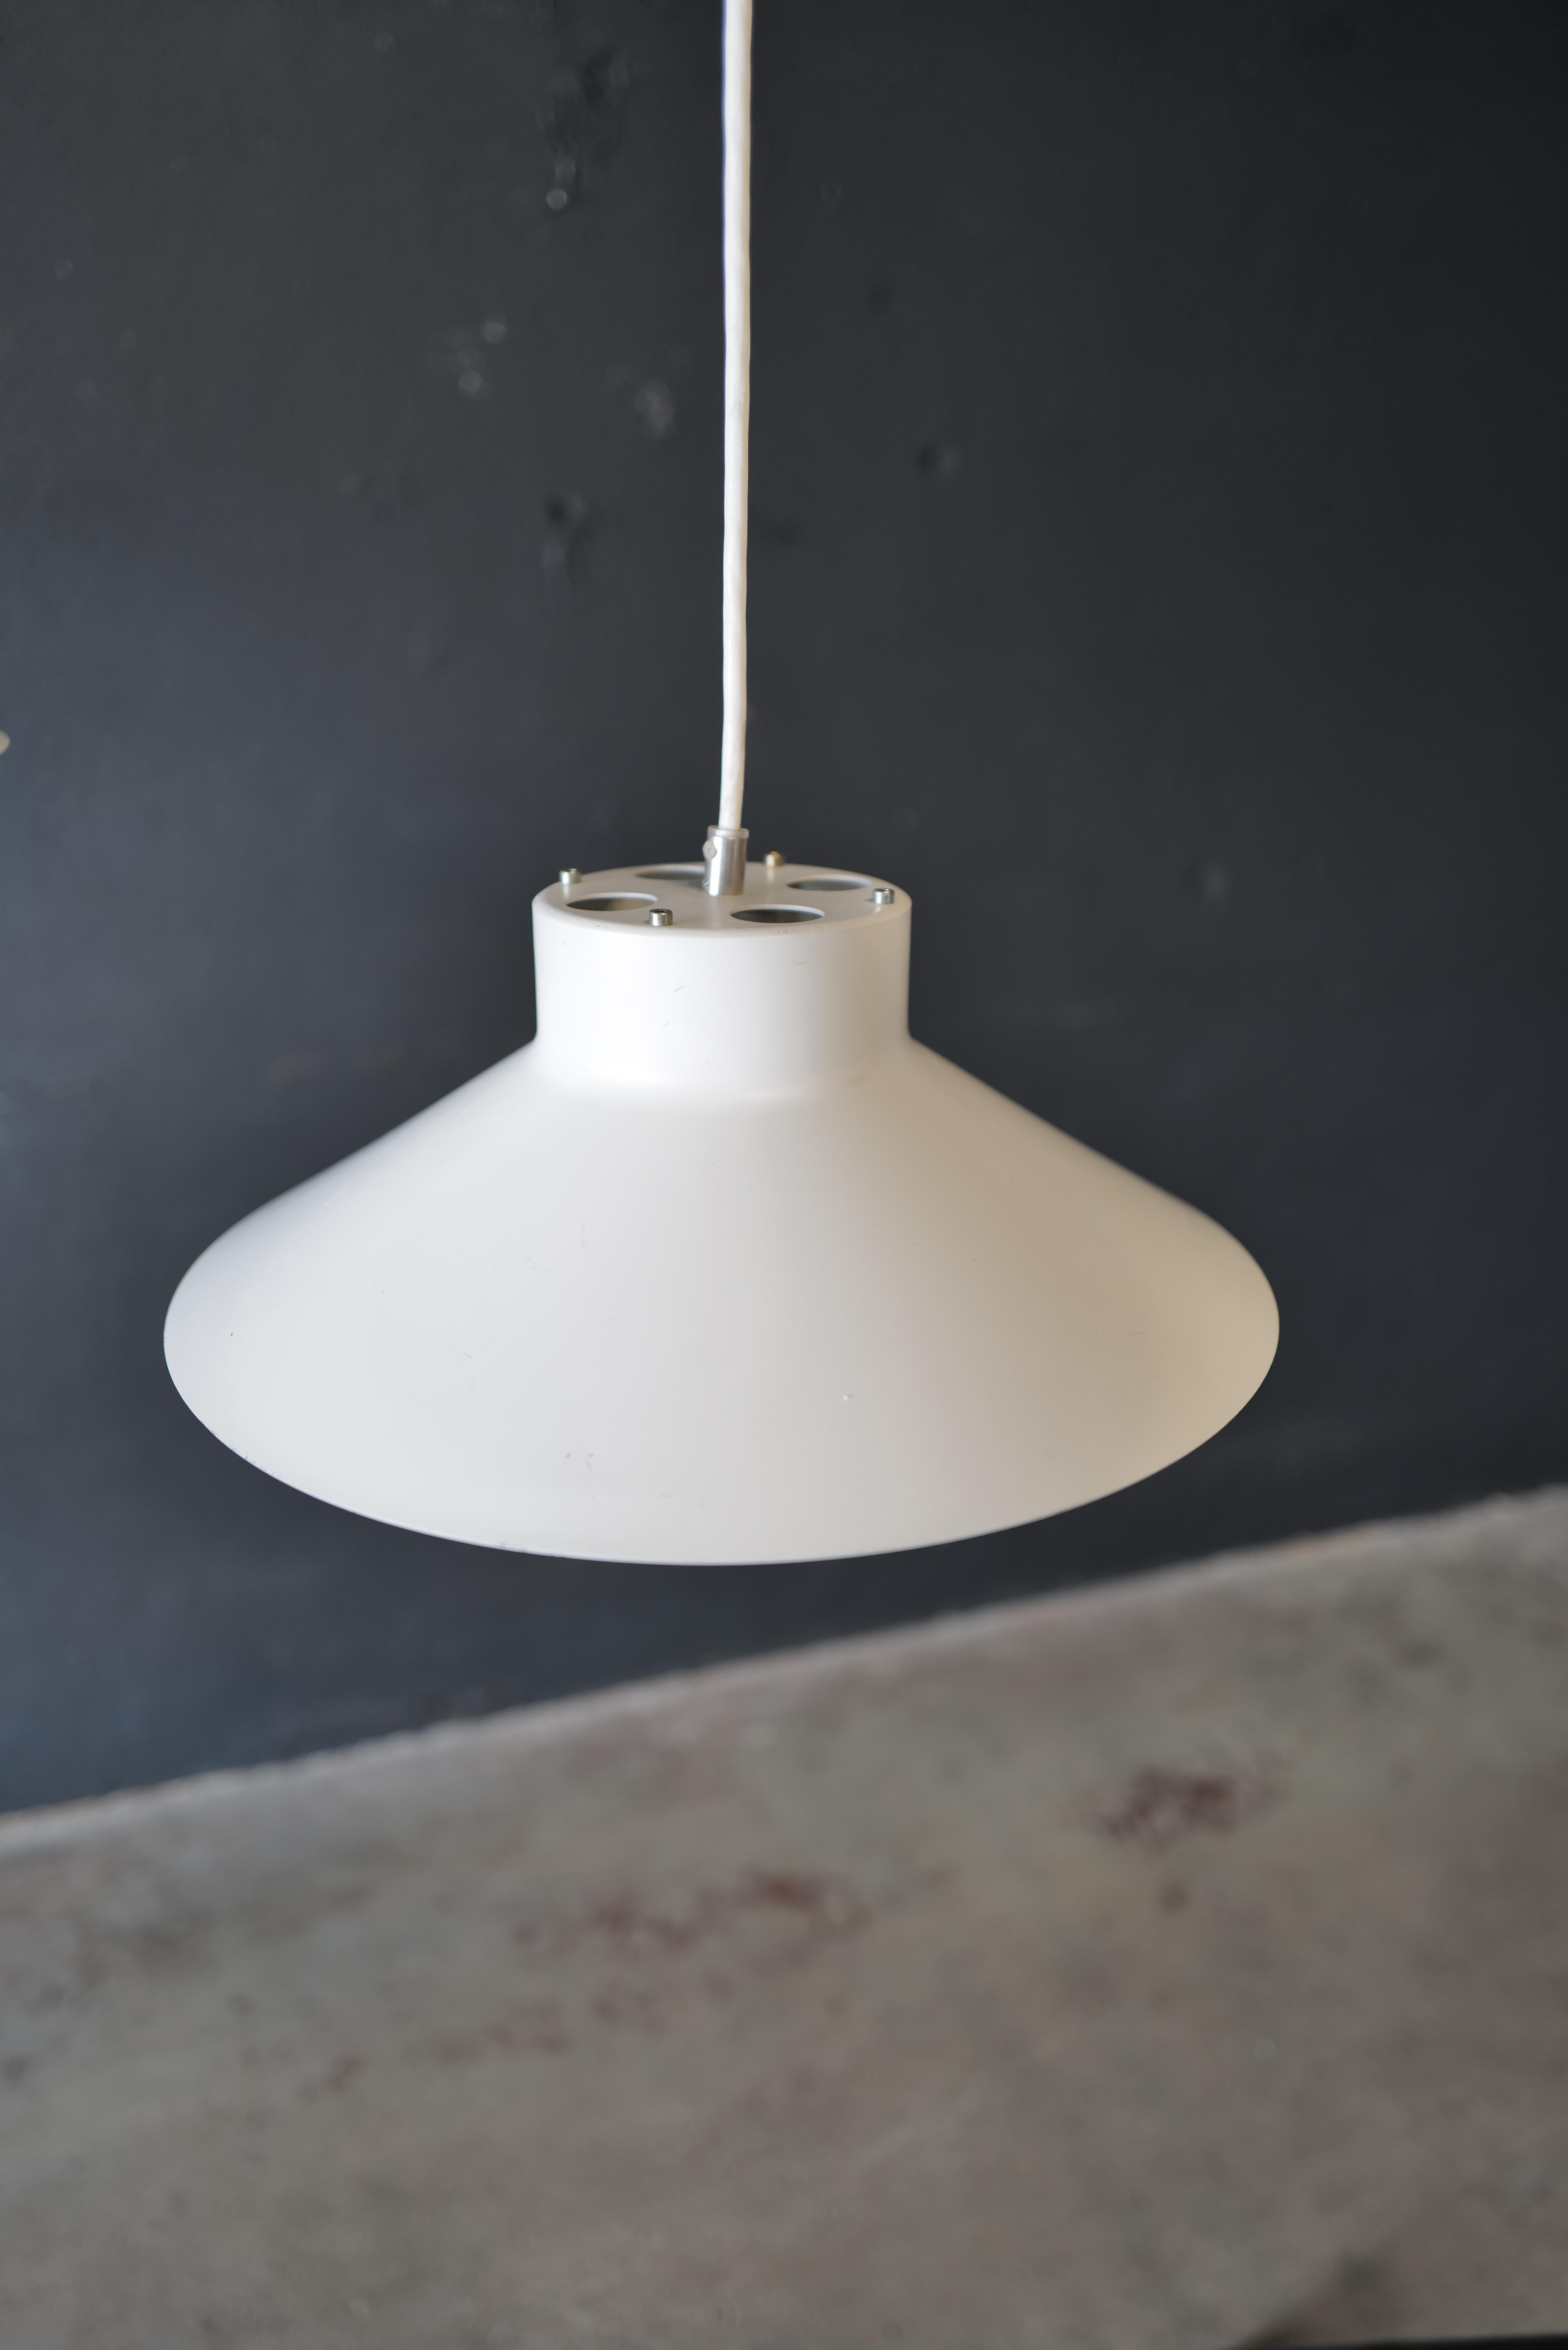 La lampe suspendue Louis Poulsen est un superbe luminaire connu pour son design intemporel et son exceptionnelle qualité d'exécution. Elle est dotée d'une Silhouette épurée et élégante, conçue pour éclairer les espaces de manière à la fois